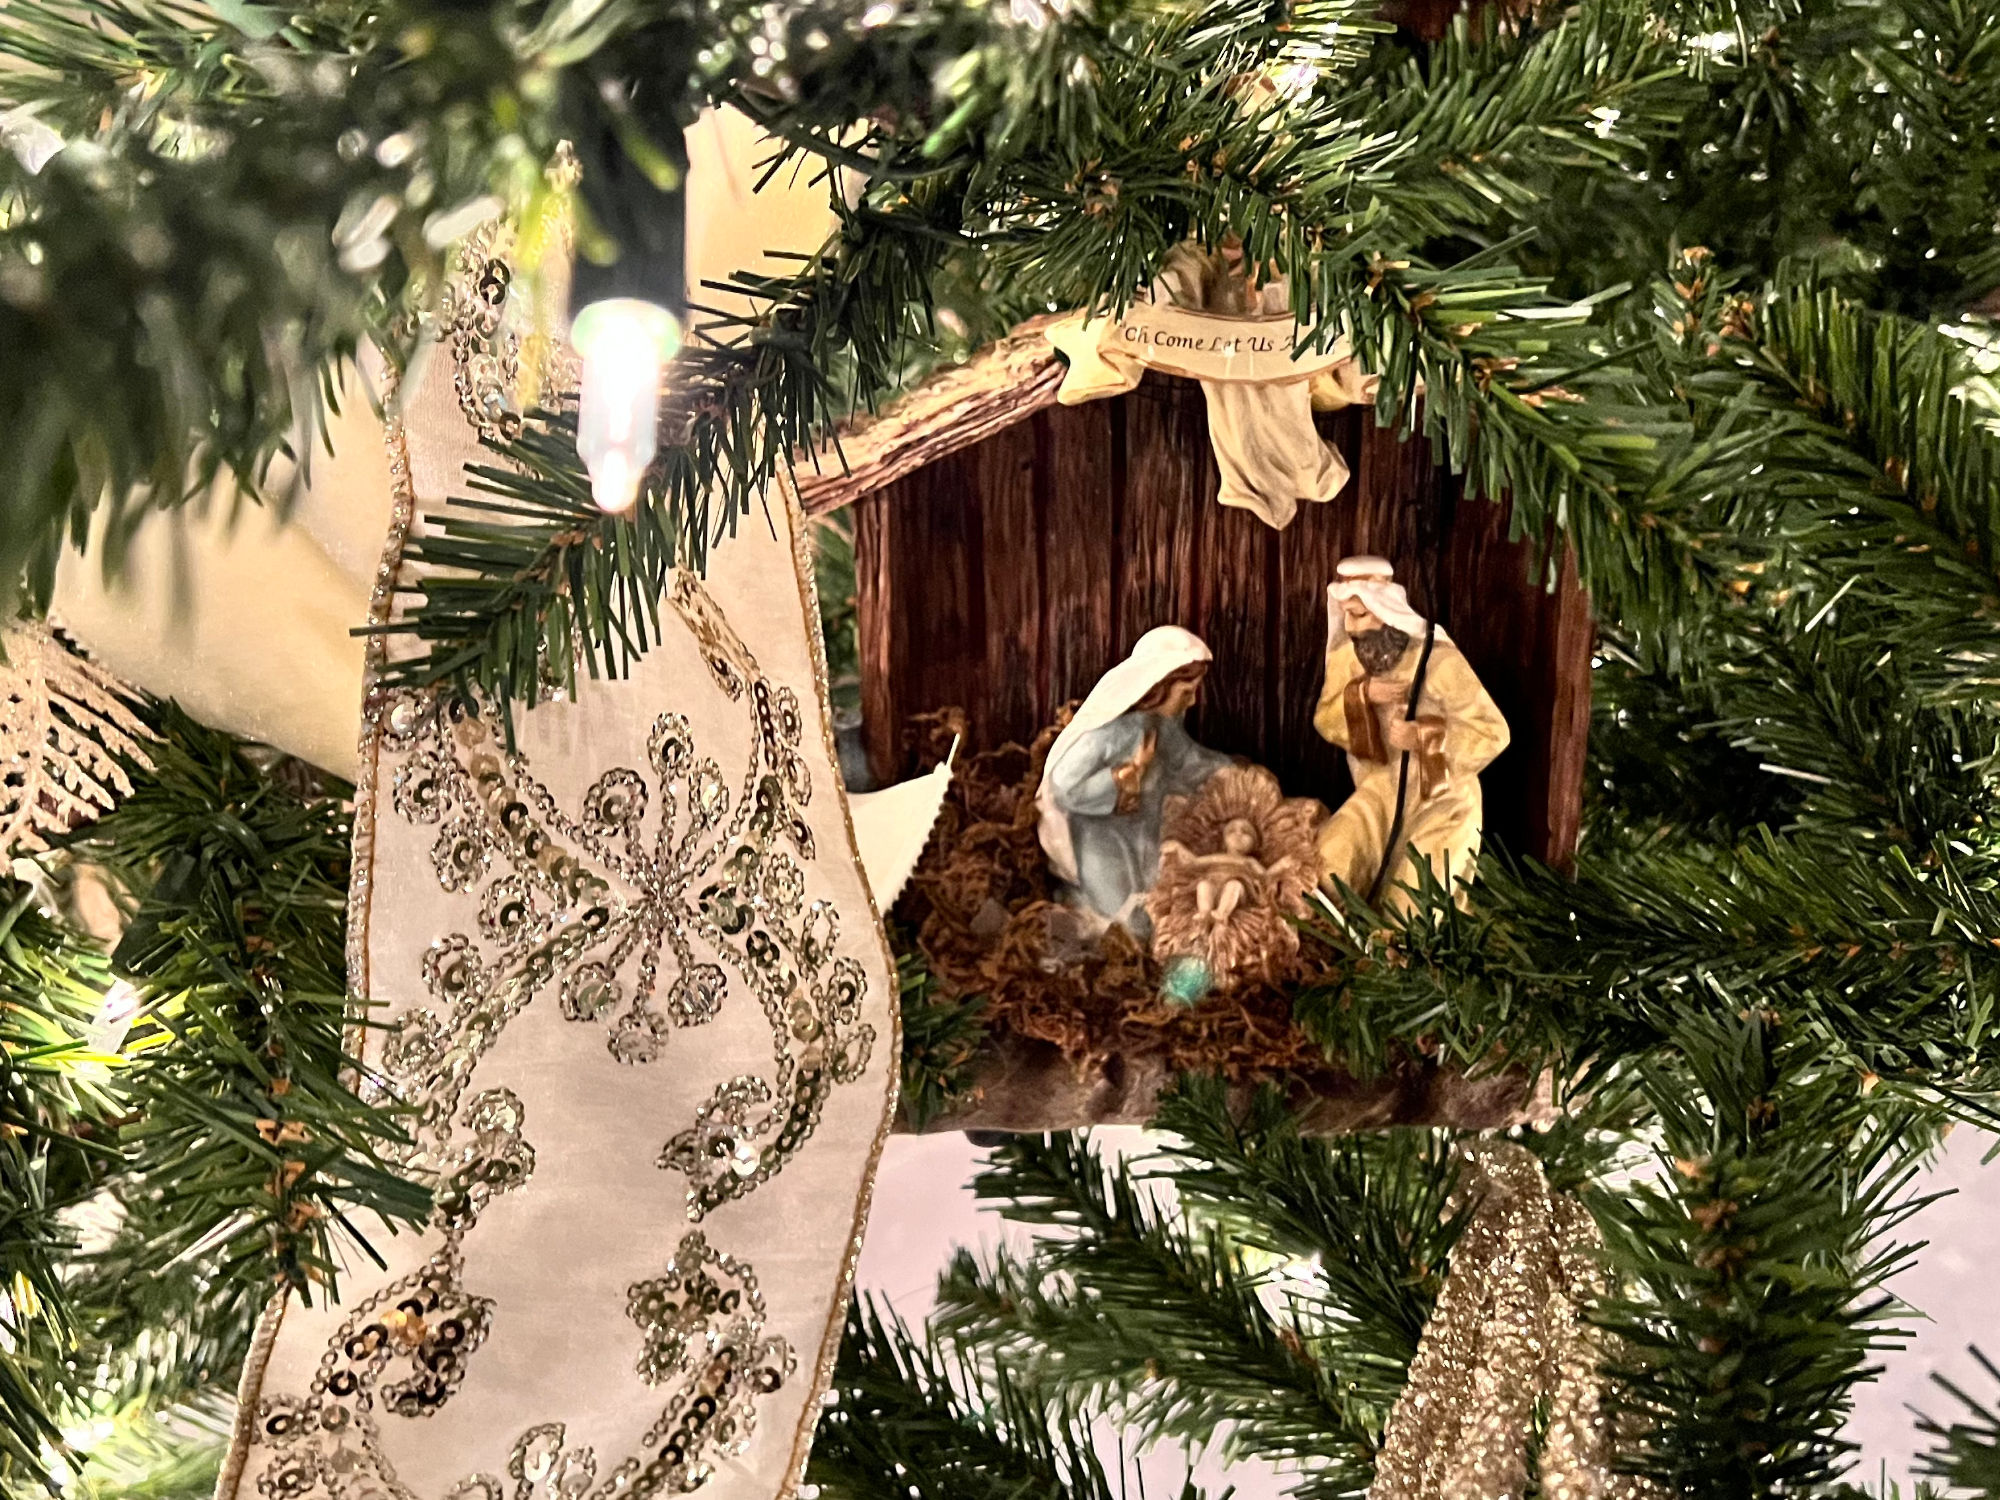 Manger Christmas Ornament